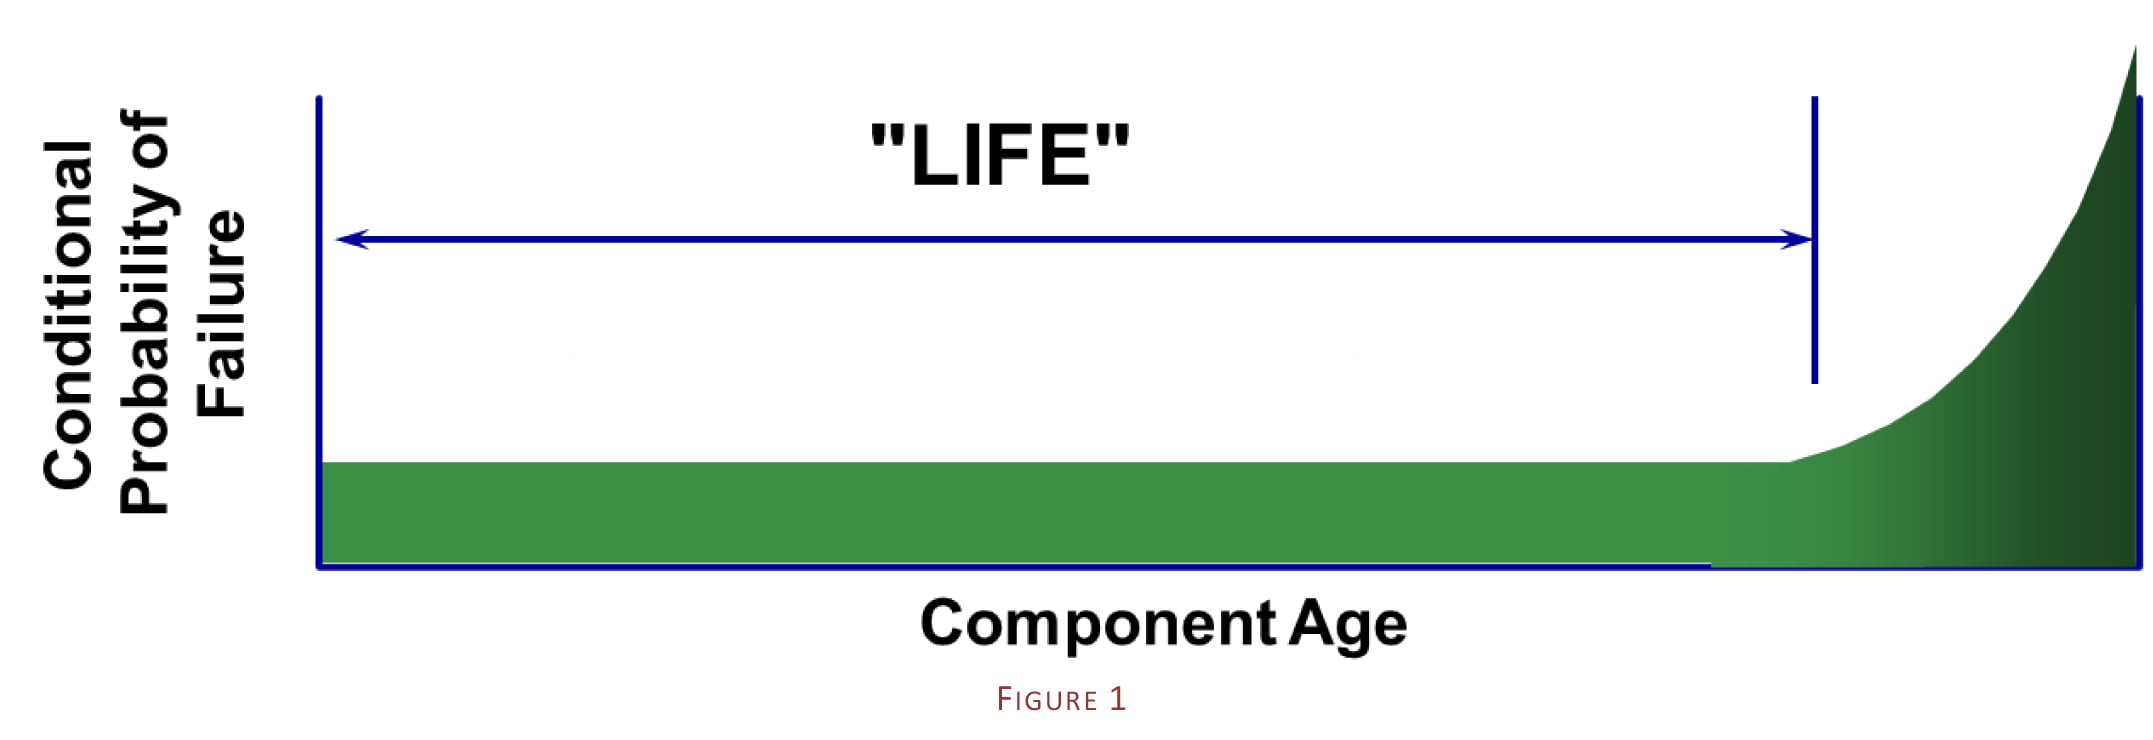 Equipment Life Diagram 1